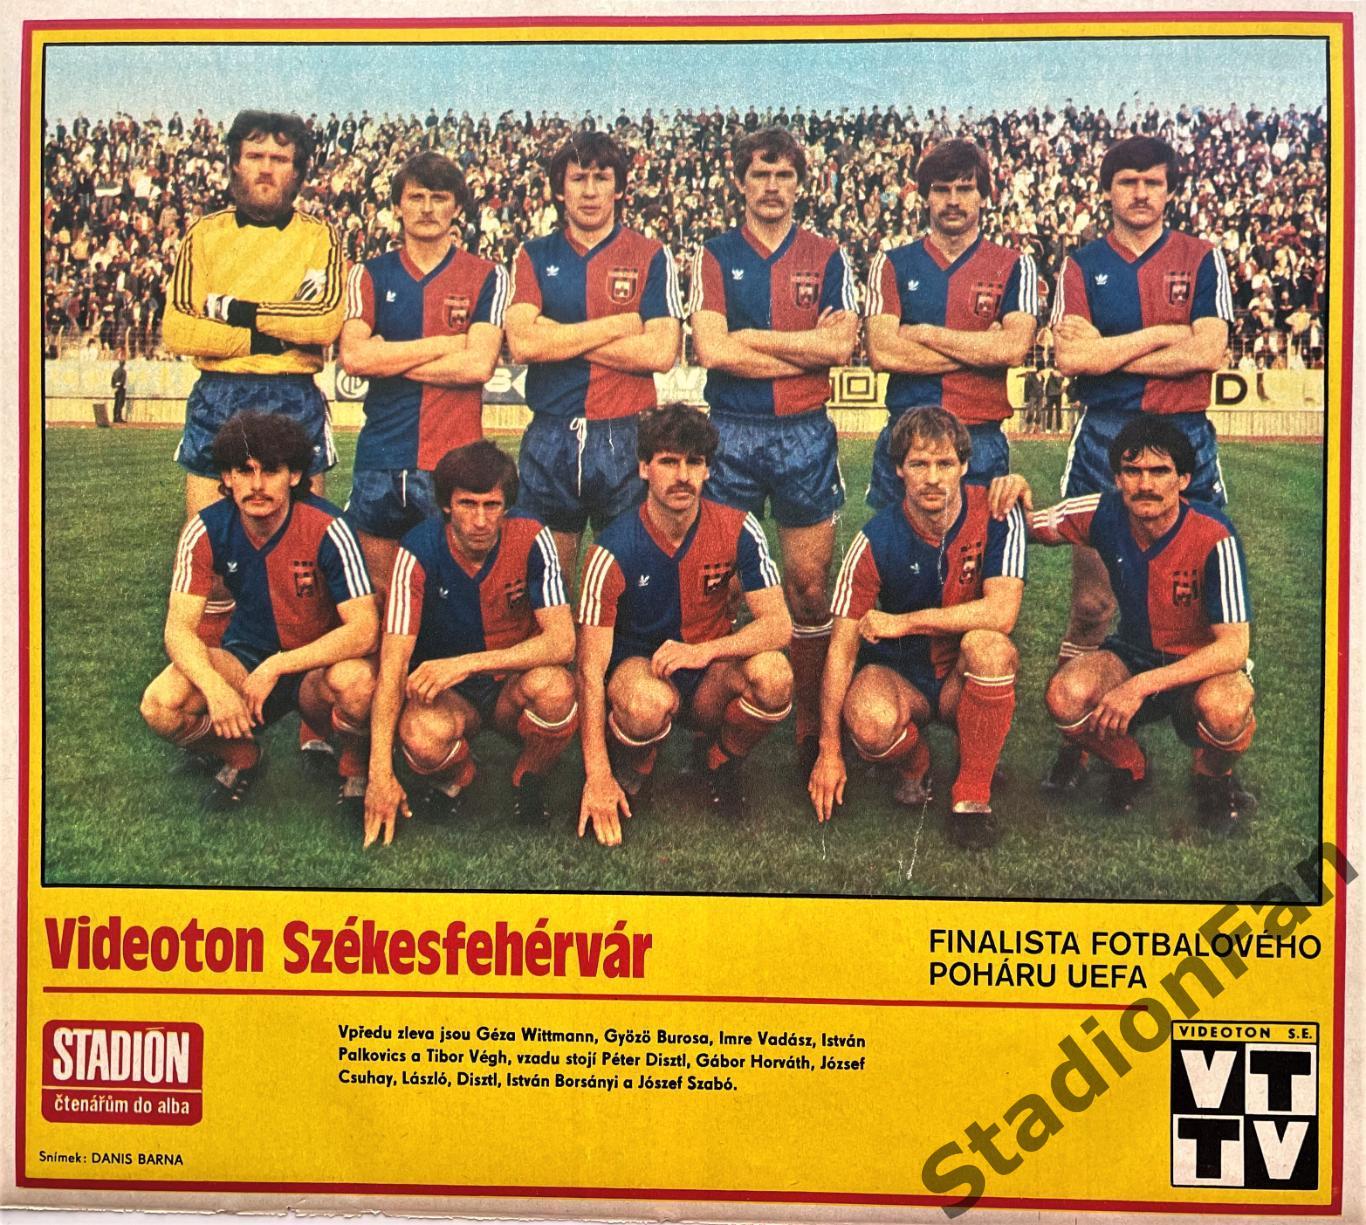 Постер из журнала Stadion (Стадион) - Videoton, 1985.